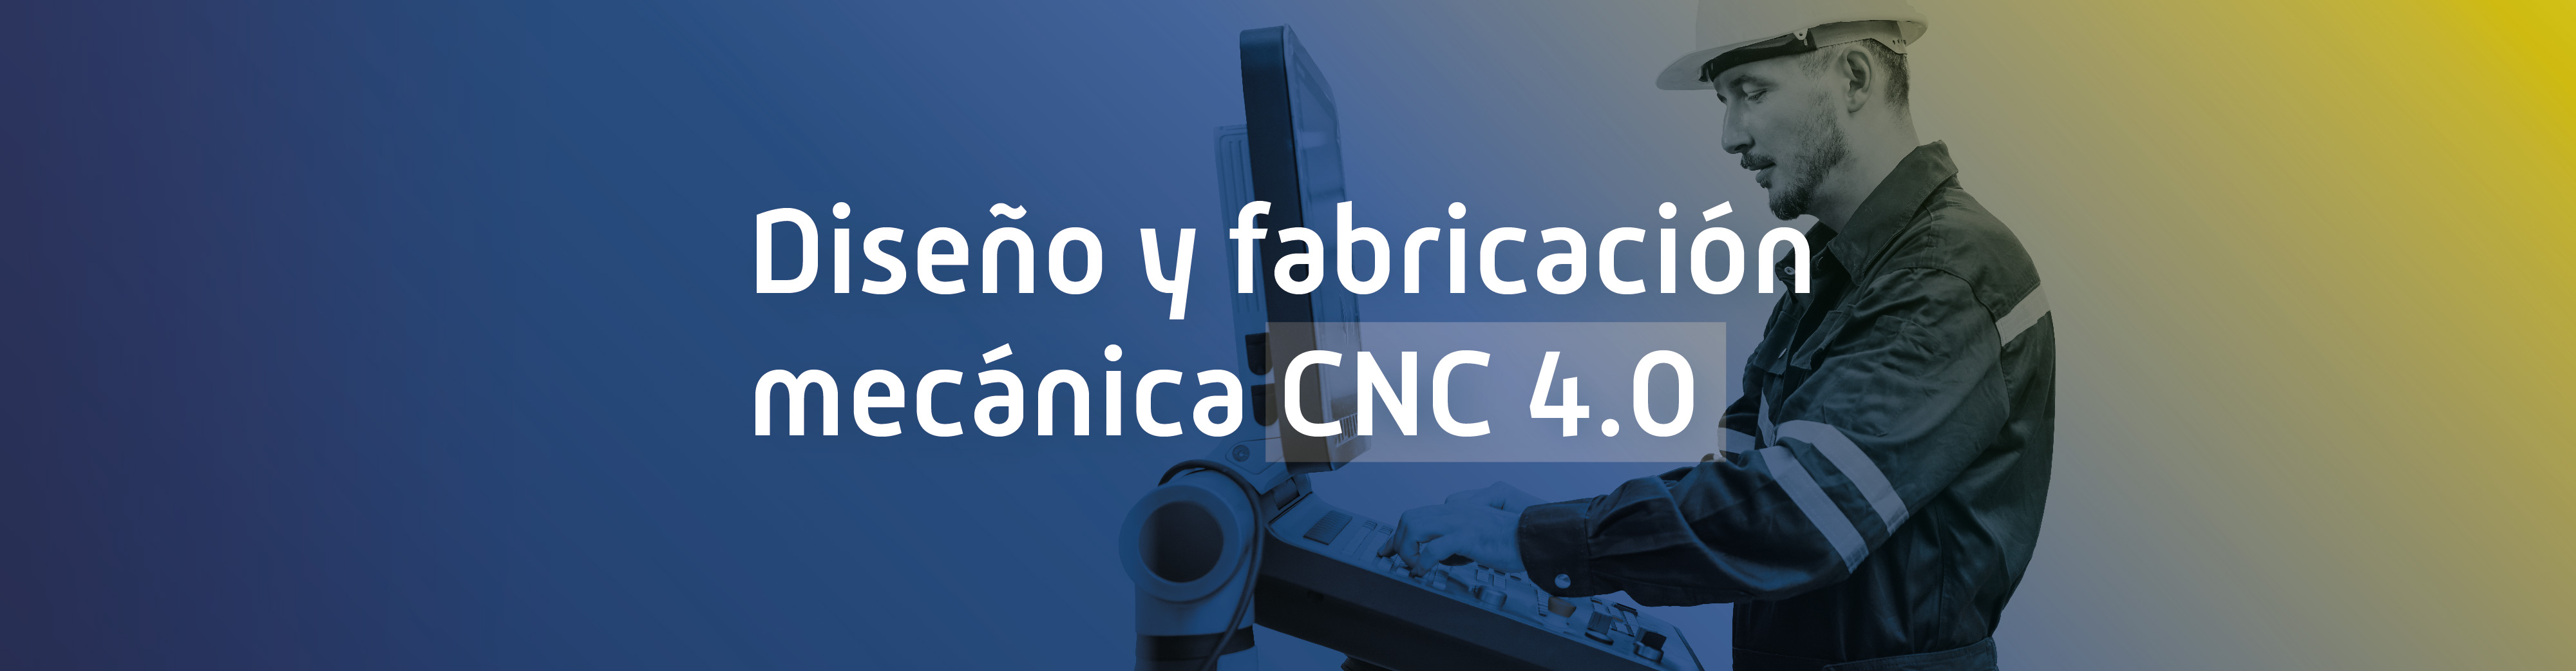 Diseño y fabricación mecánica CNC 4.0